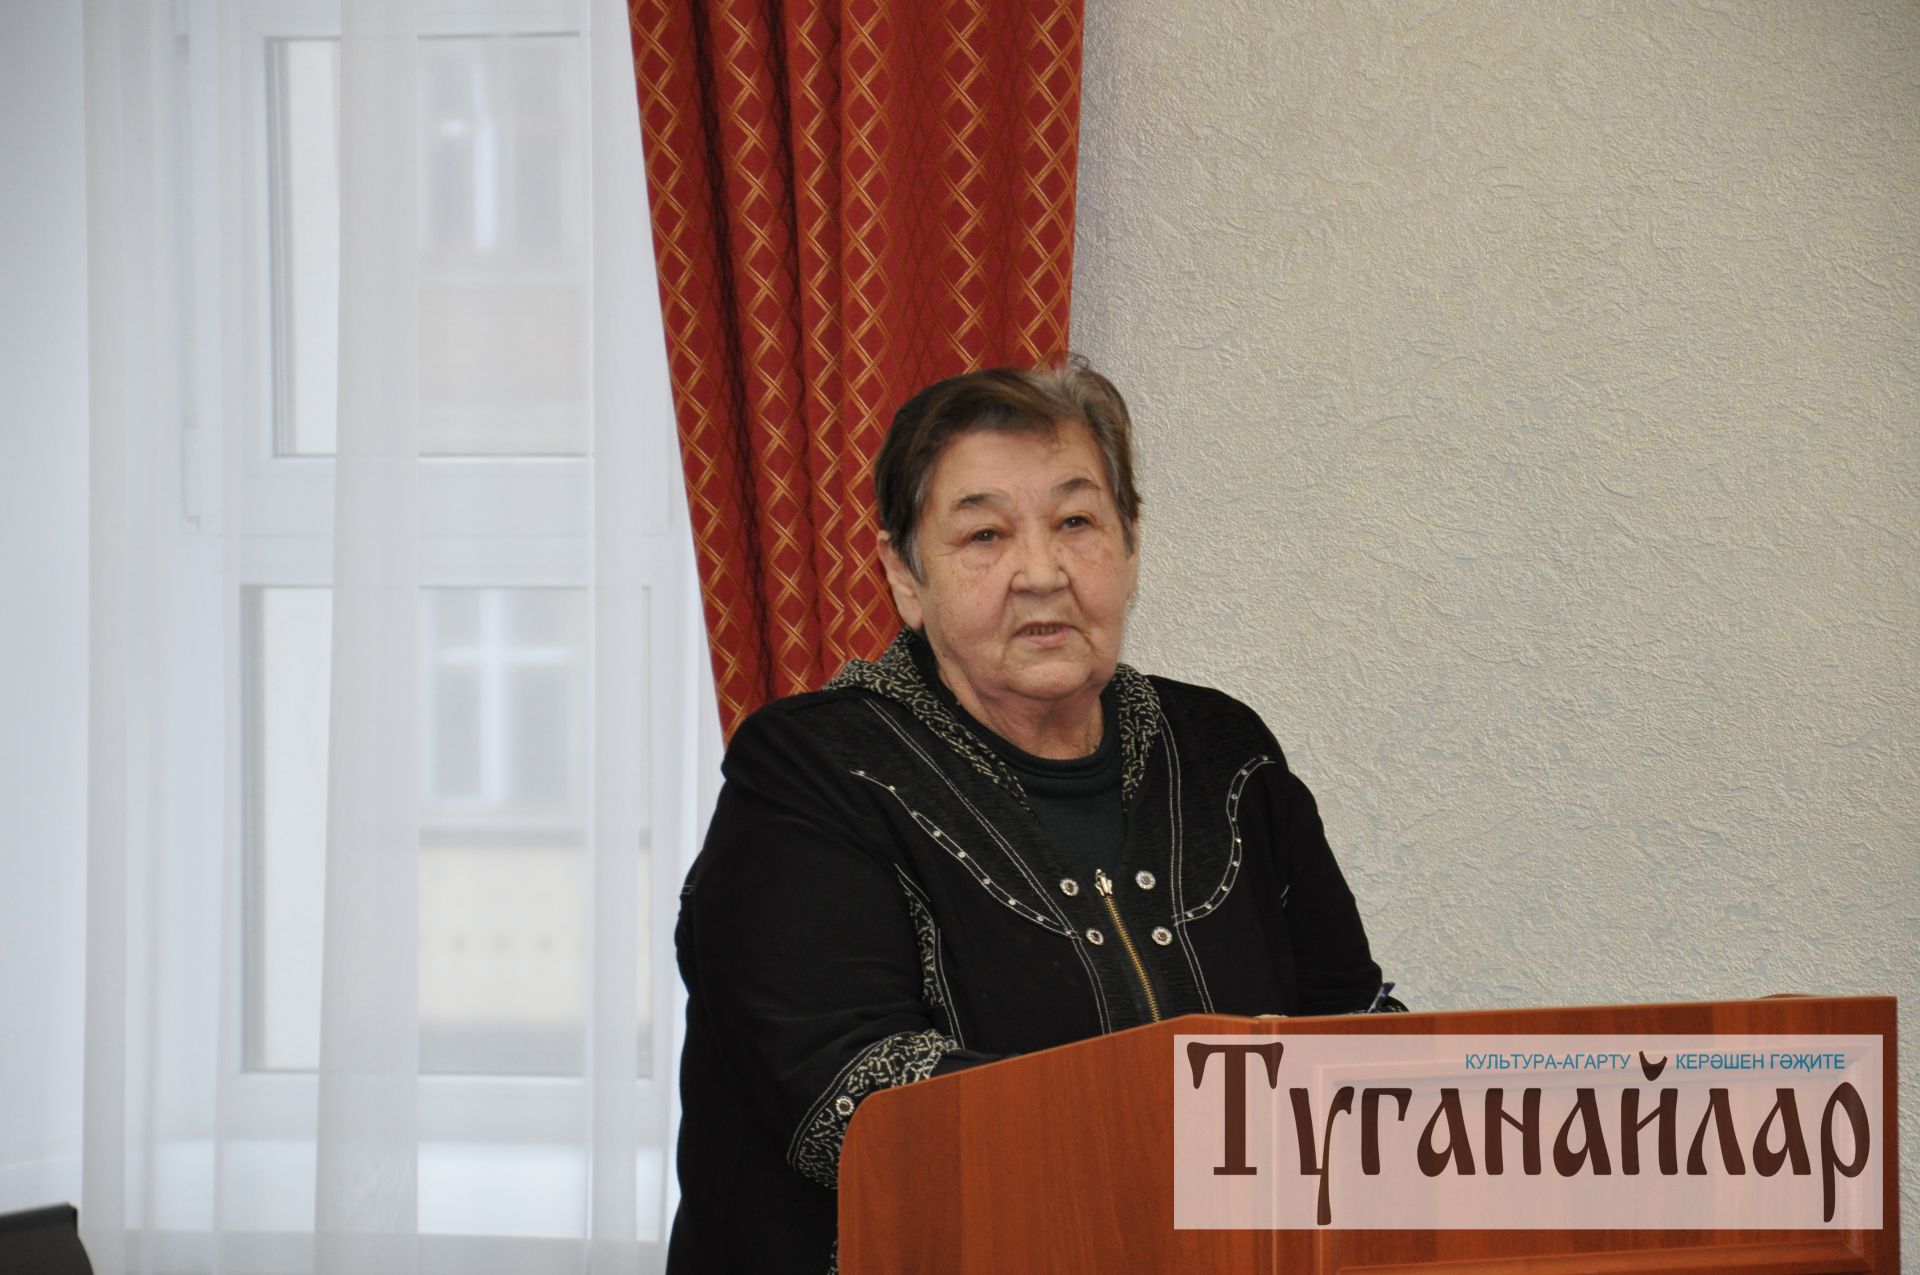 Кряшенская общественность отметила 30-летие со дня возобновления службы на церковно-кряшенском языке